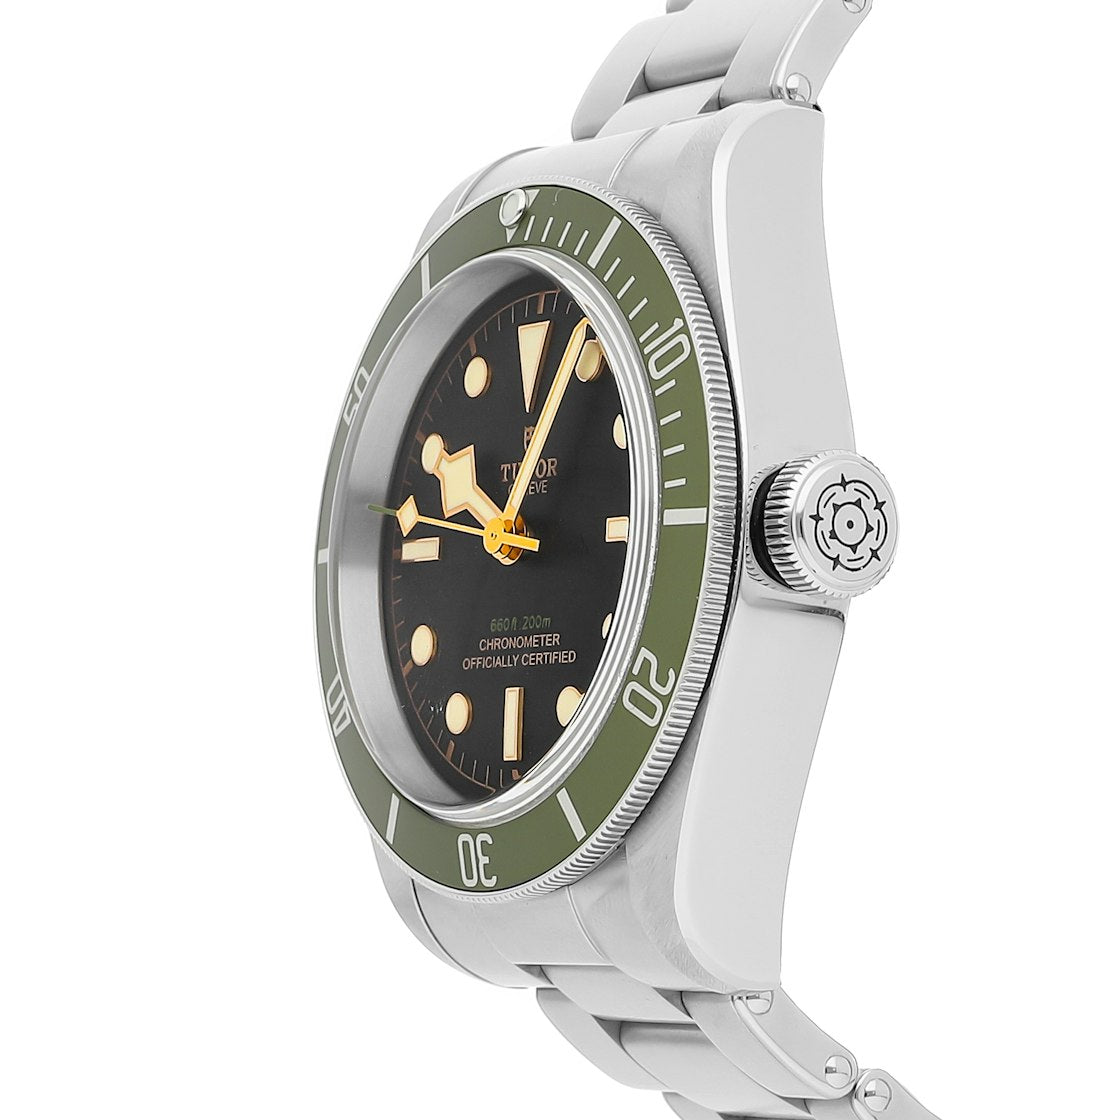 Tudor Black Bay Green Harrods con pulsera de acero Correa OTAN Reloj para hombre 41 79230G